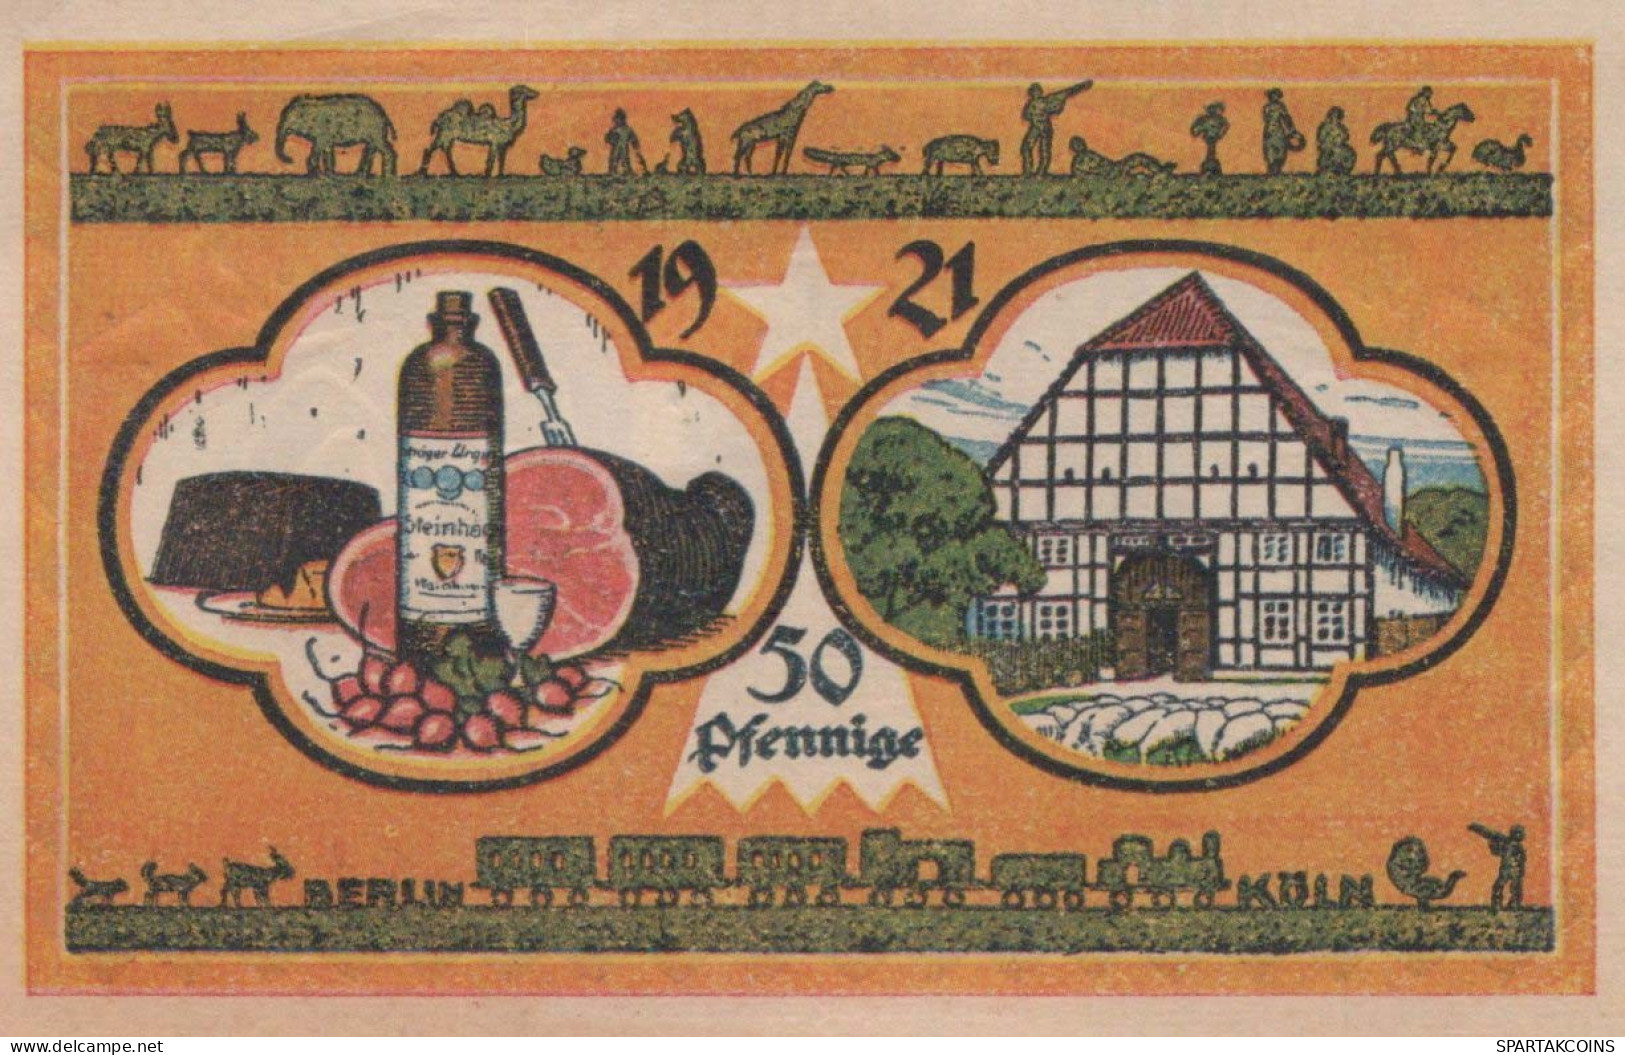 50 PFENNIG 1921 Stadt STEINHEIM IN WESTFALEN Westphalia DEUTSCHLAND #PF575 - [11] Local Banknote Issues